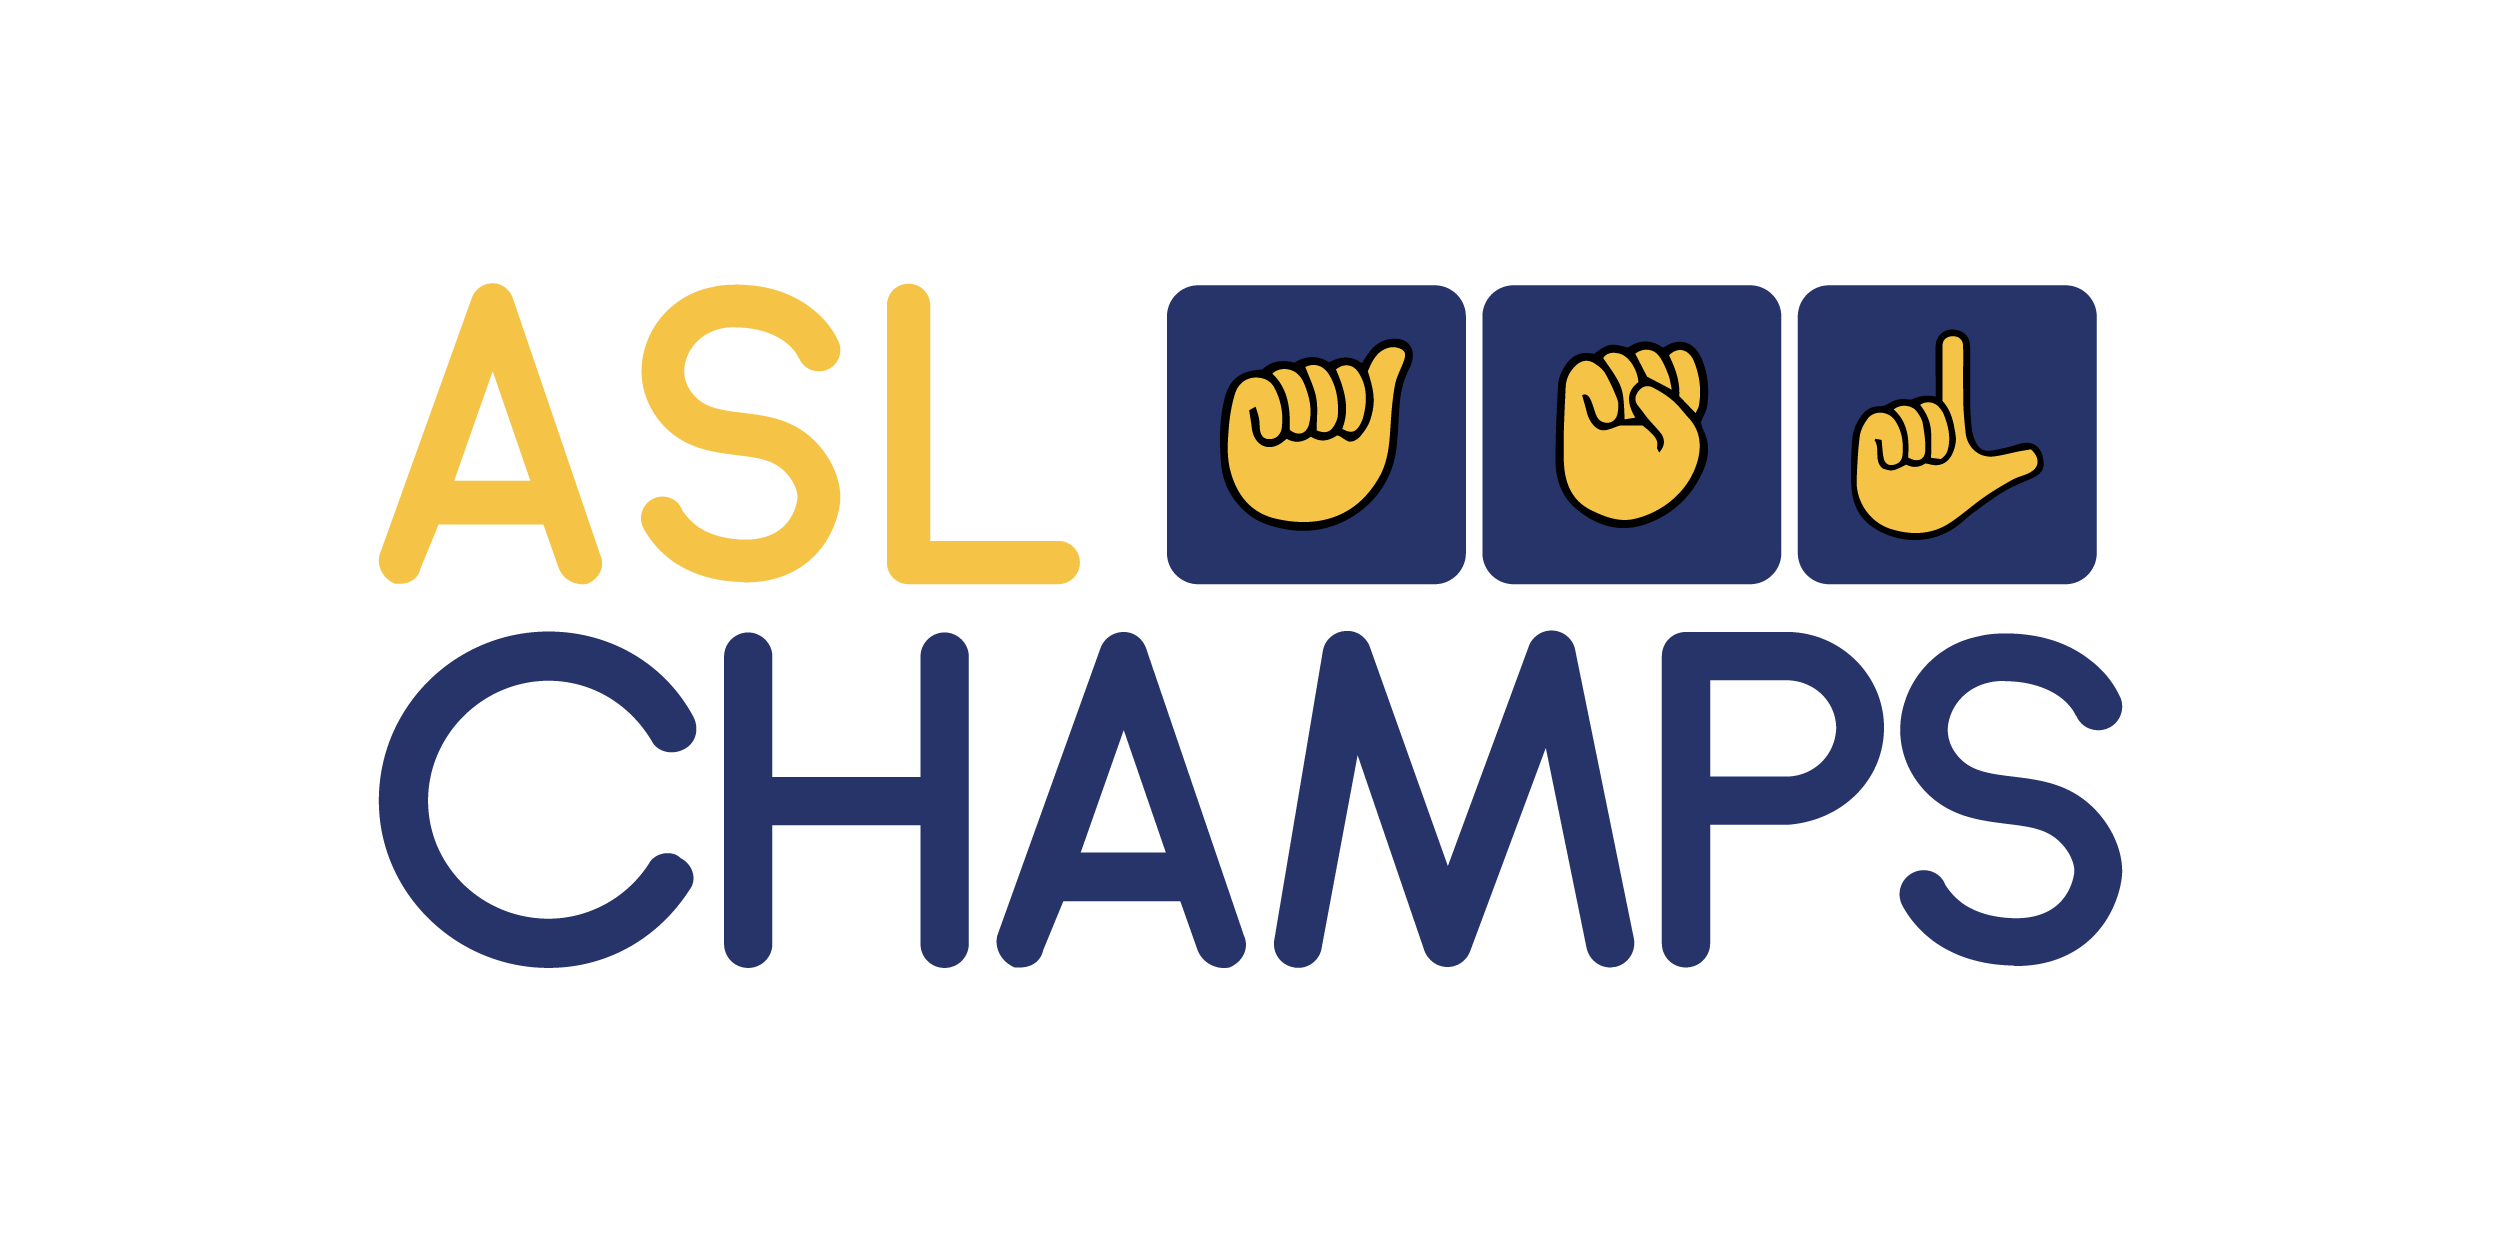 ASL Champs